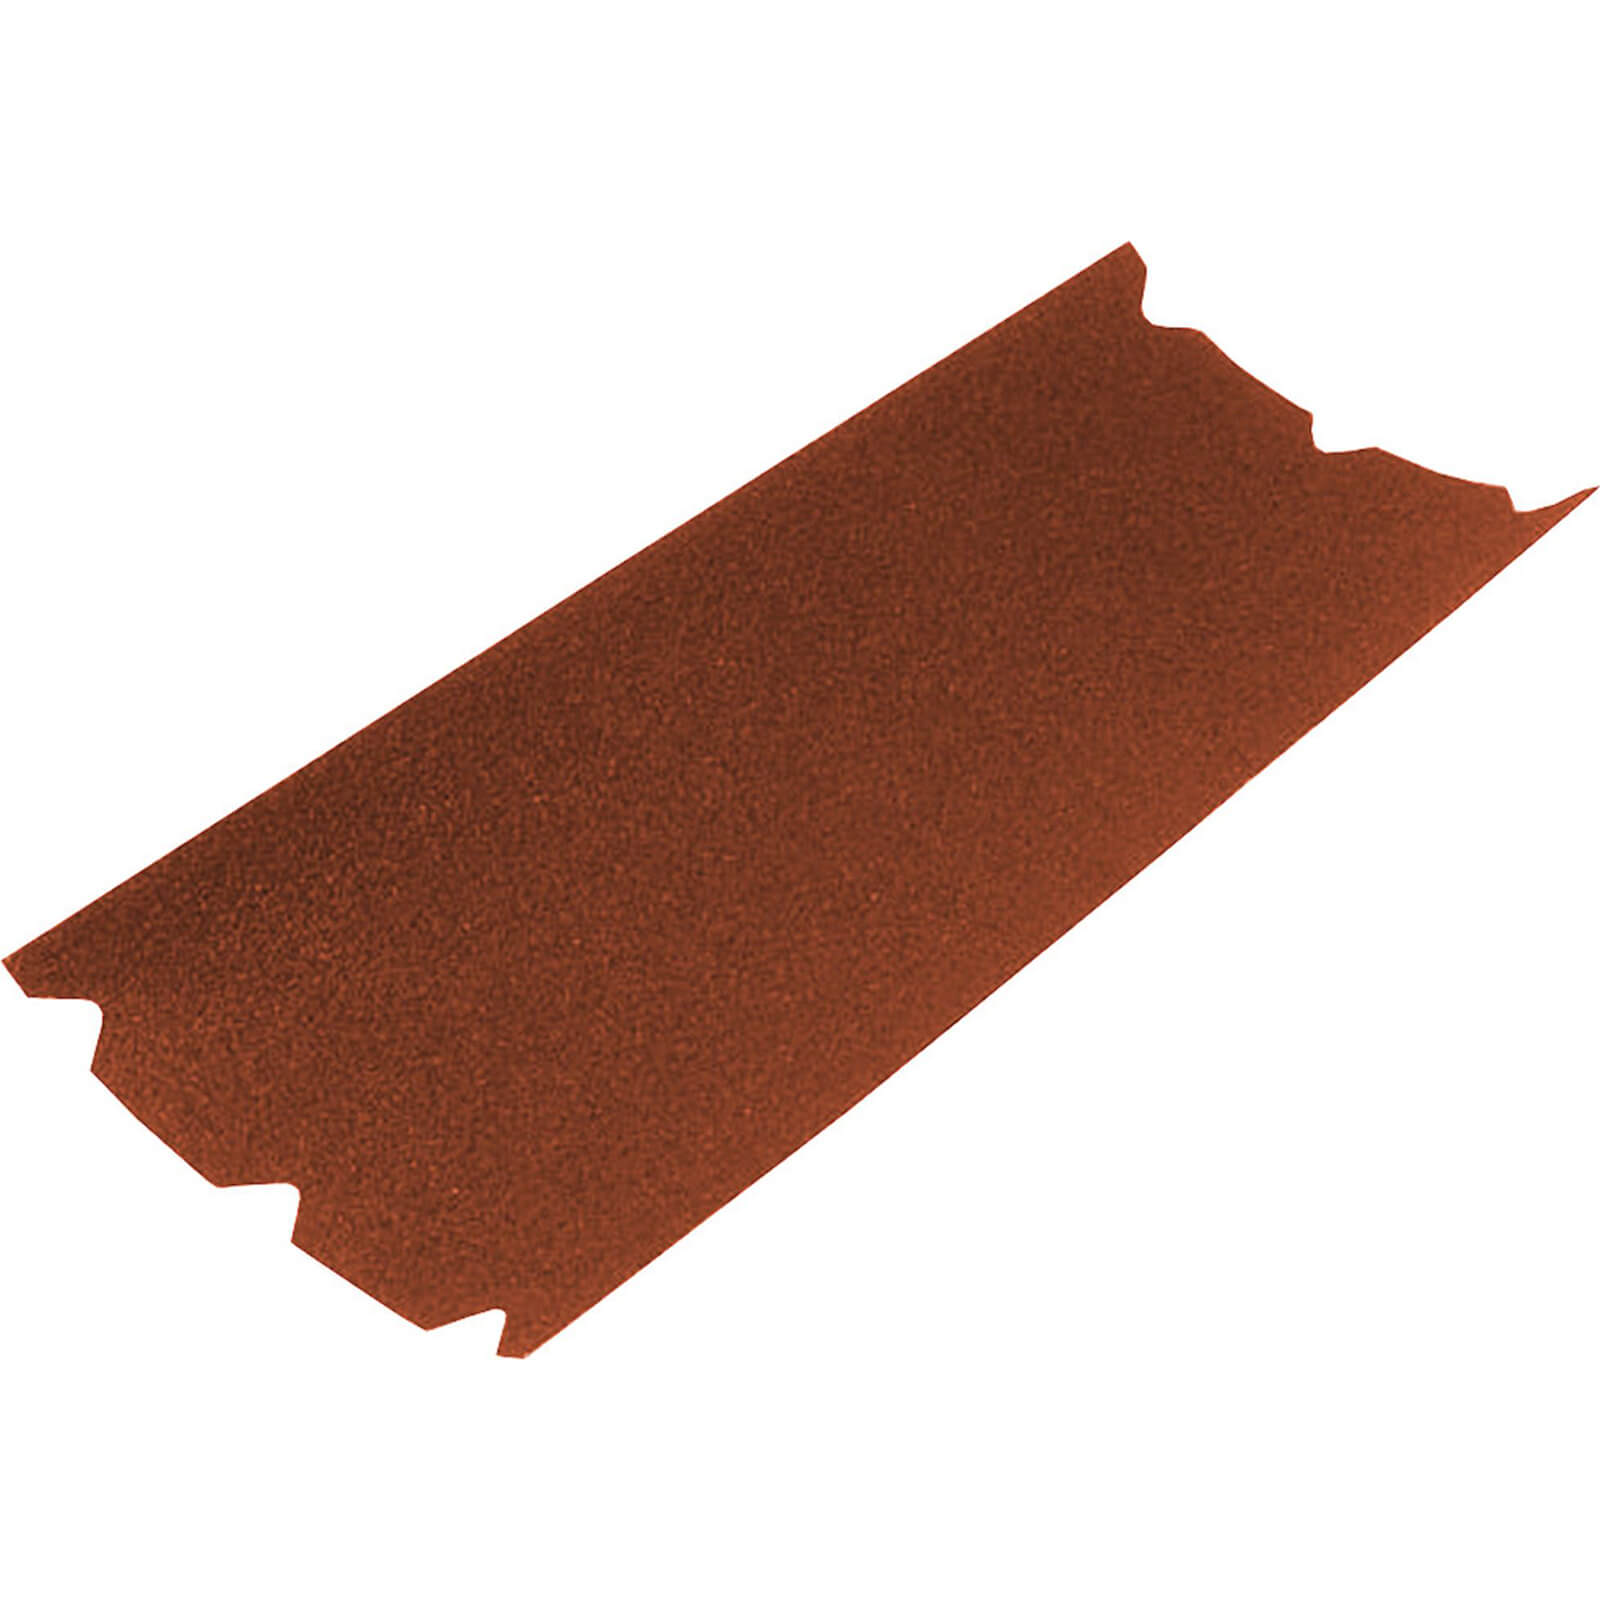 Image of Faithfull Floor Sanding Sheets 203mm x 475mm 80g Pack of 1